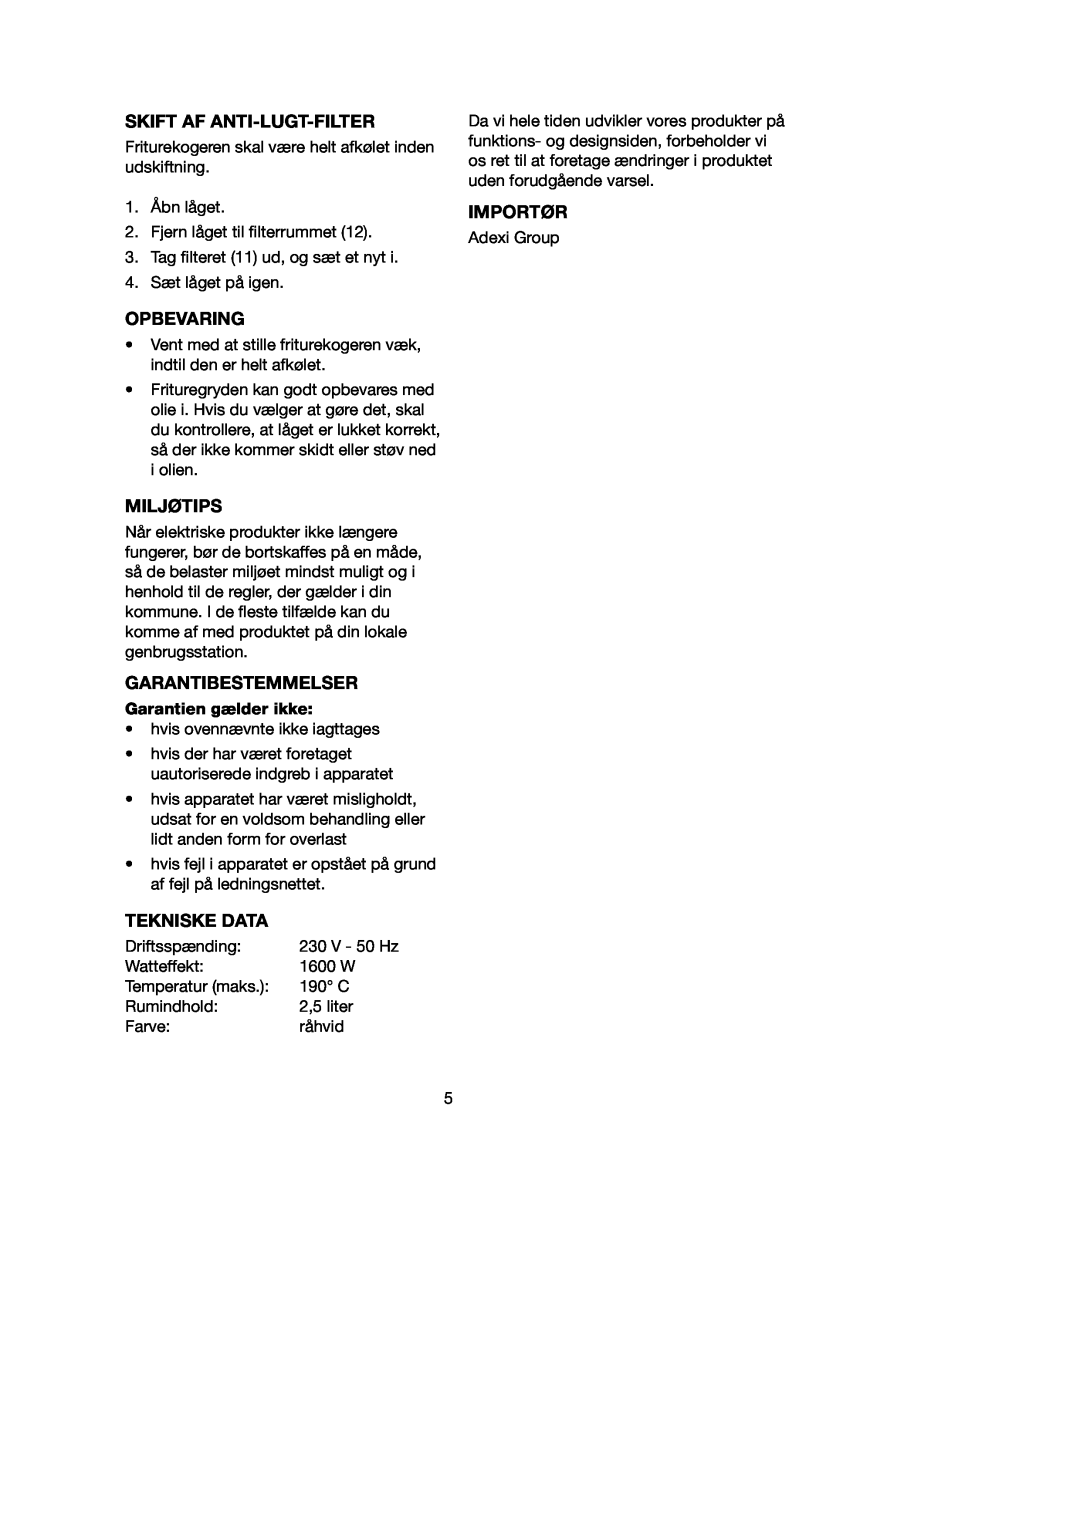 Melissa 743-191 manual Skift Af Anti-Lugt-Filter, Opbevaring, Miljøtips, Garantibestemmelser, Tekniske Data, Importør 